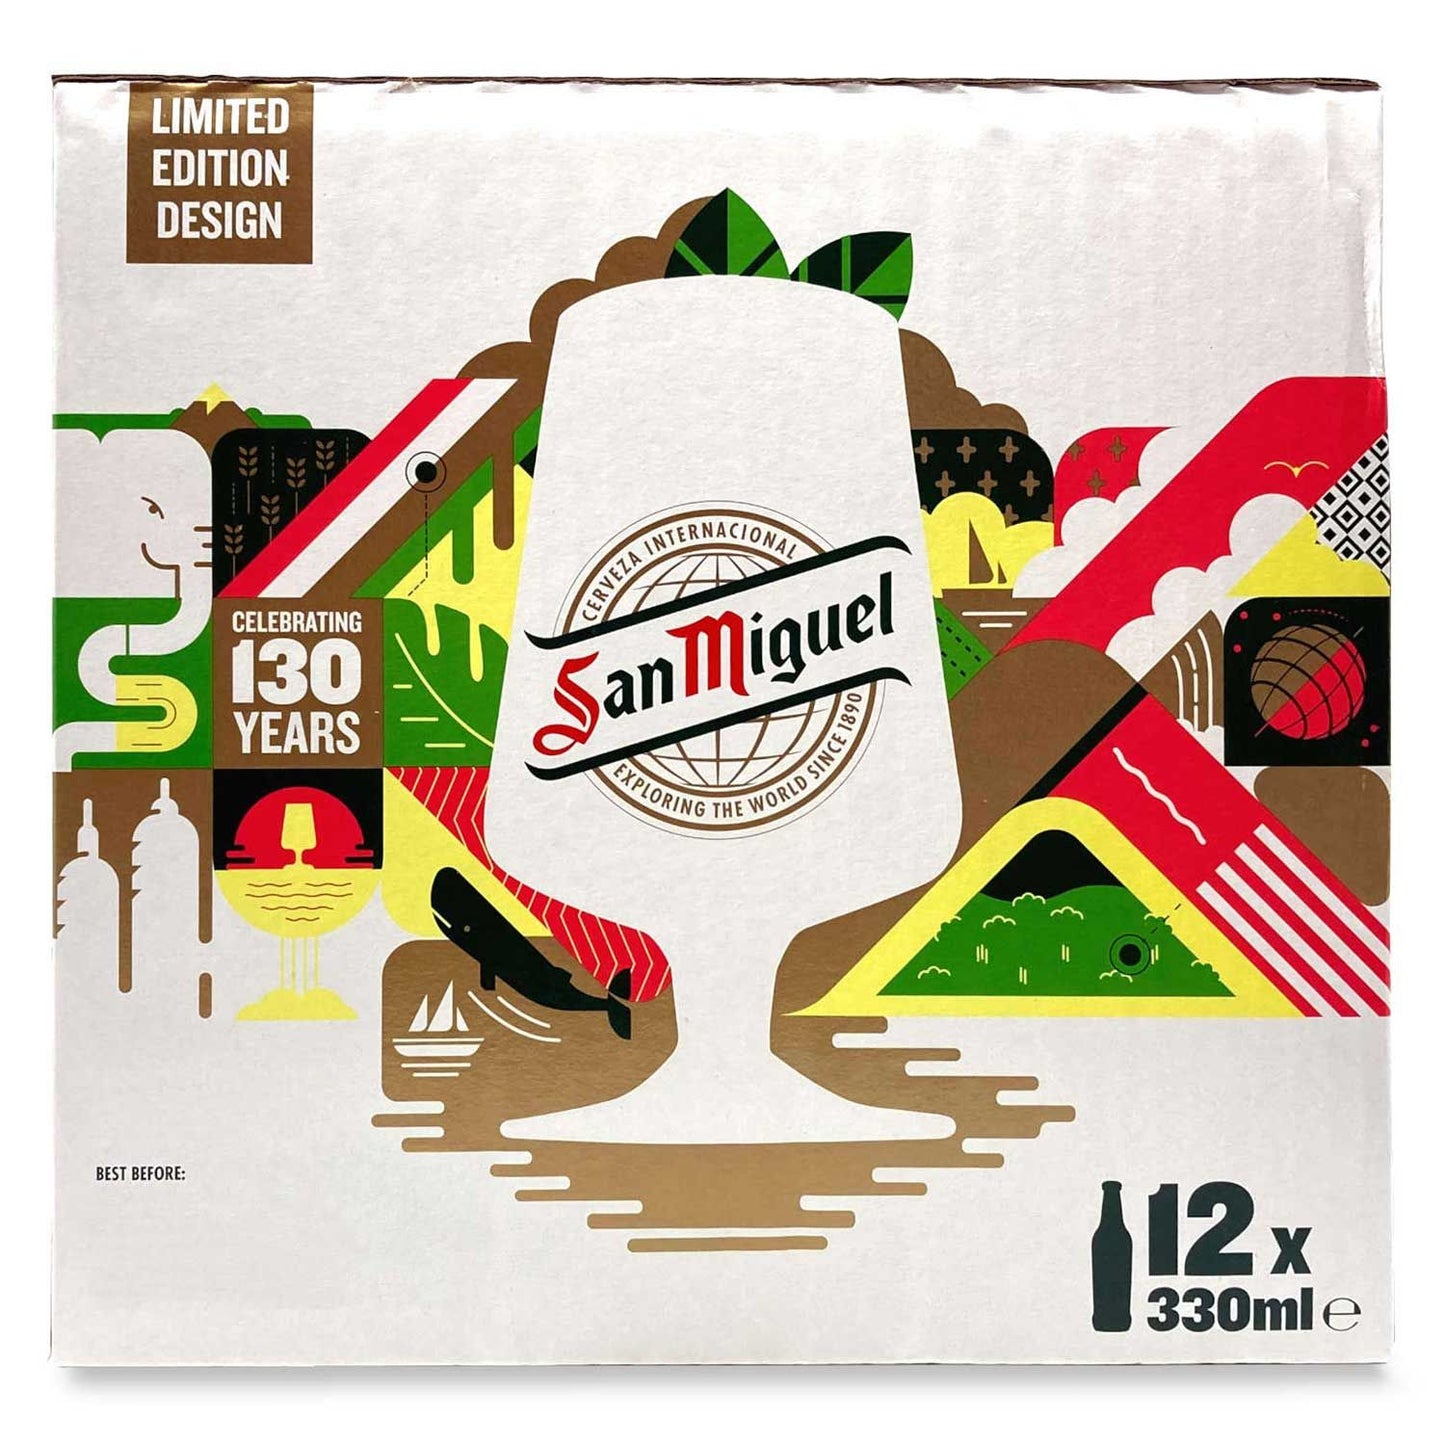 San Miguel Premium Lager Beer 12x330ml